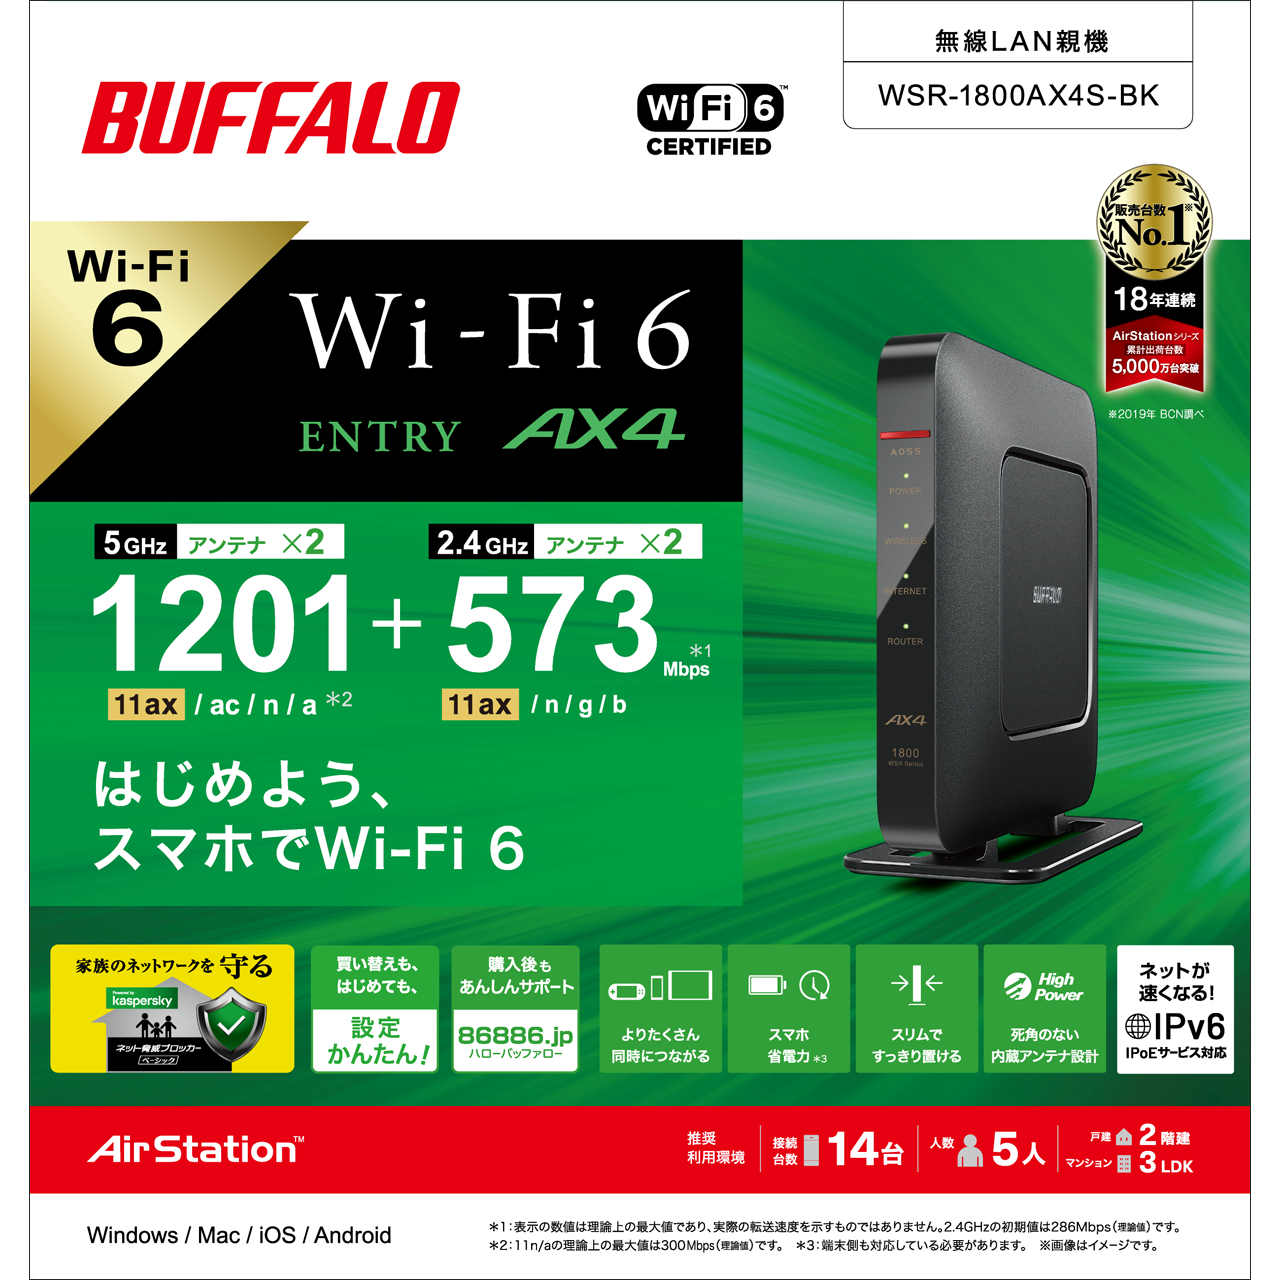 Wi-Fi 6(11ax)対応ルーターエントリーモデル「WSR-1800AX4S」シリーズ ...